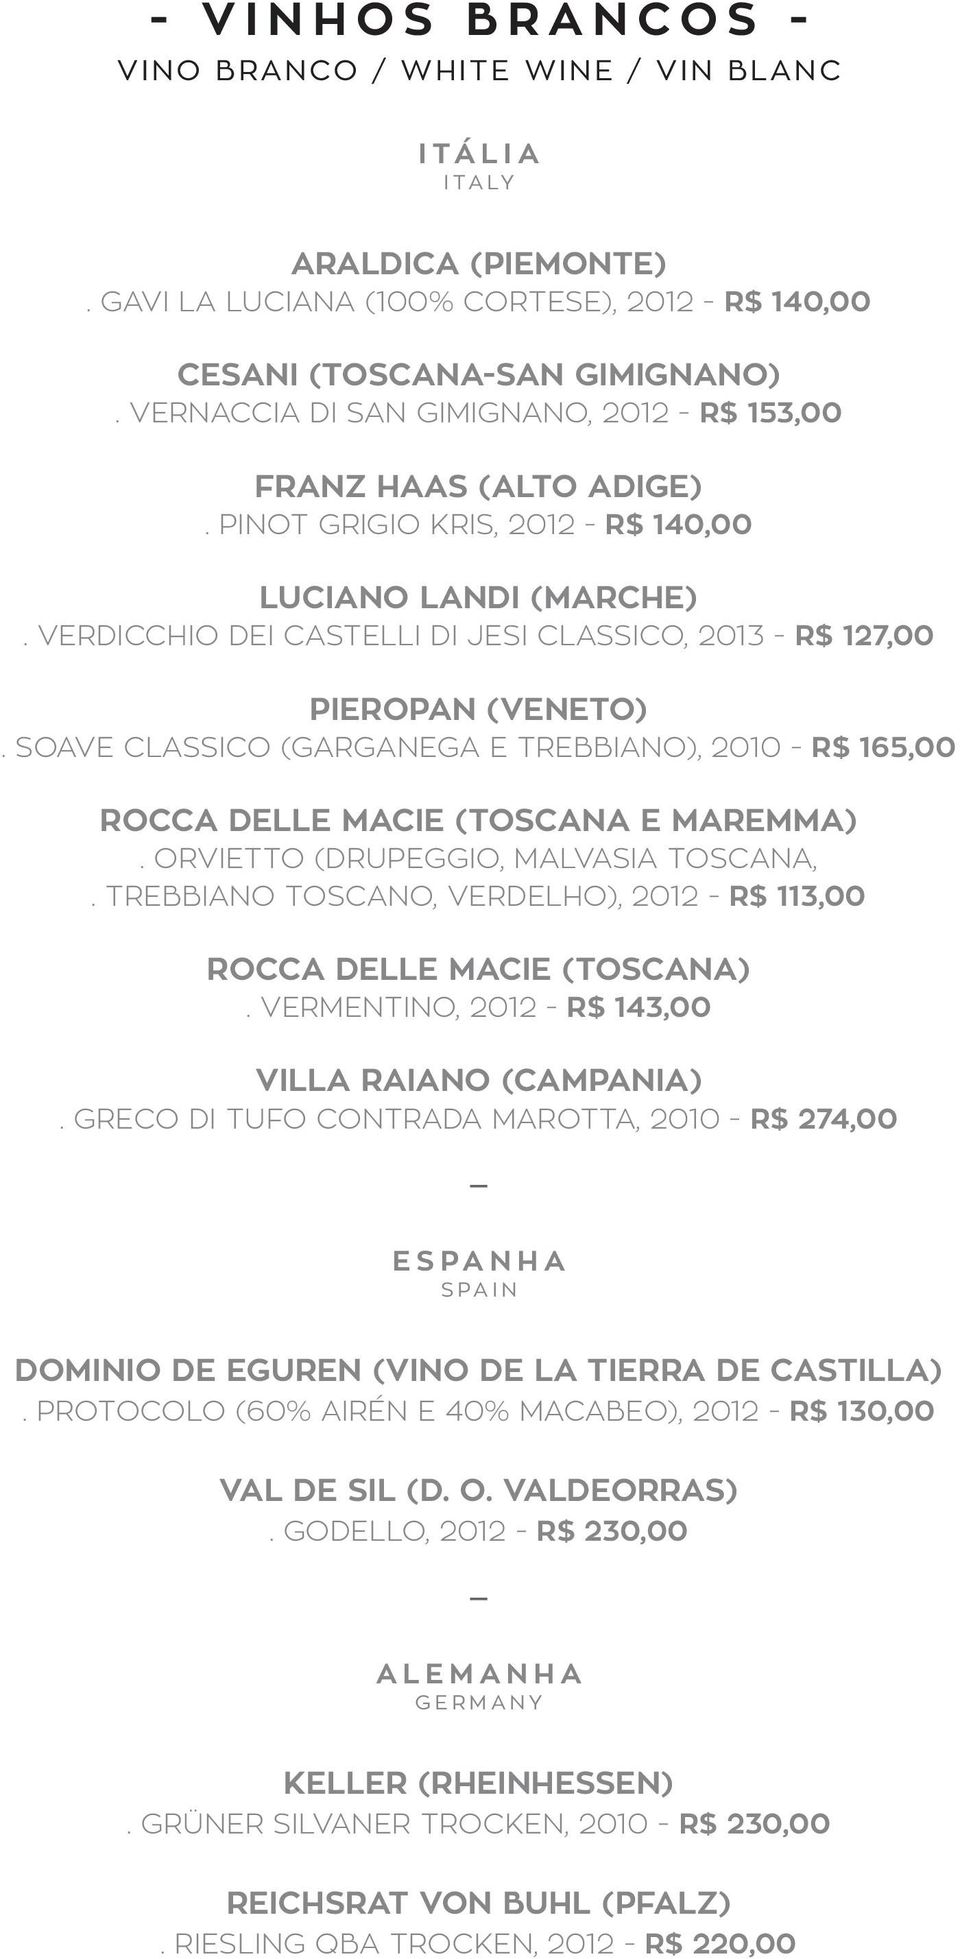 VERDICCHIO DEI CASTELLI DI JESI CLASSICO, 2013 - R$ 127,00 PIEROPAN (VENETO). SOAVE CLASSICO (GARGANEGA E TREBBIANO), 2010 - R$ 165,00 ROCCA DELLE MACIE (TOSCANA E MAREMMA).